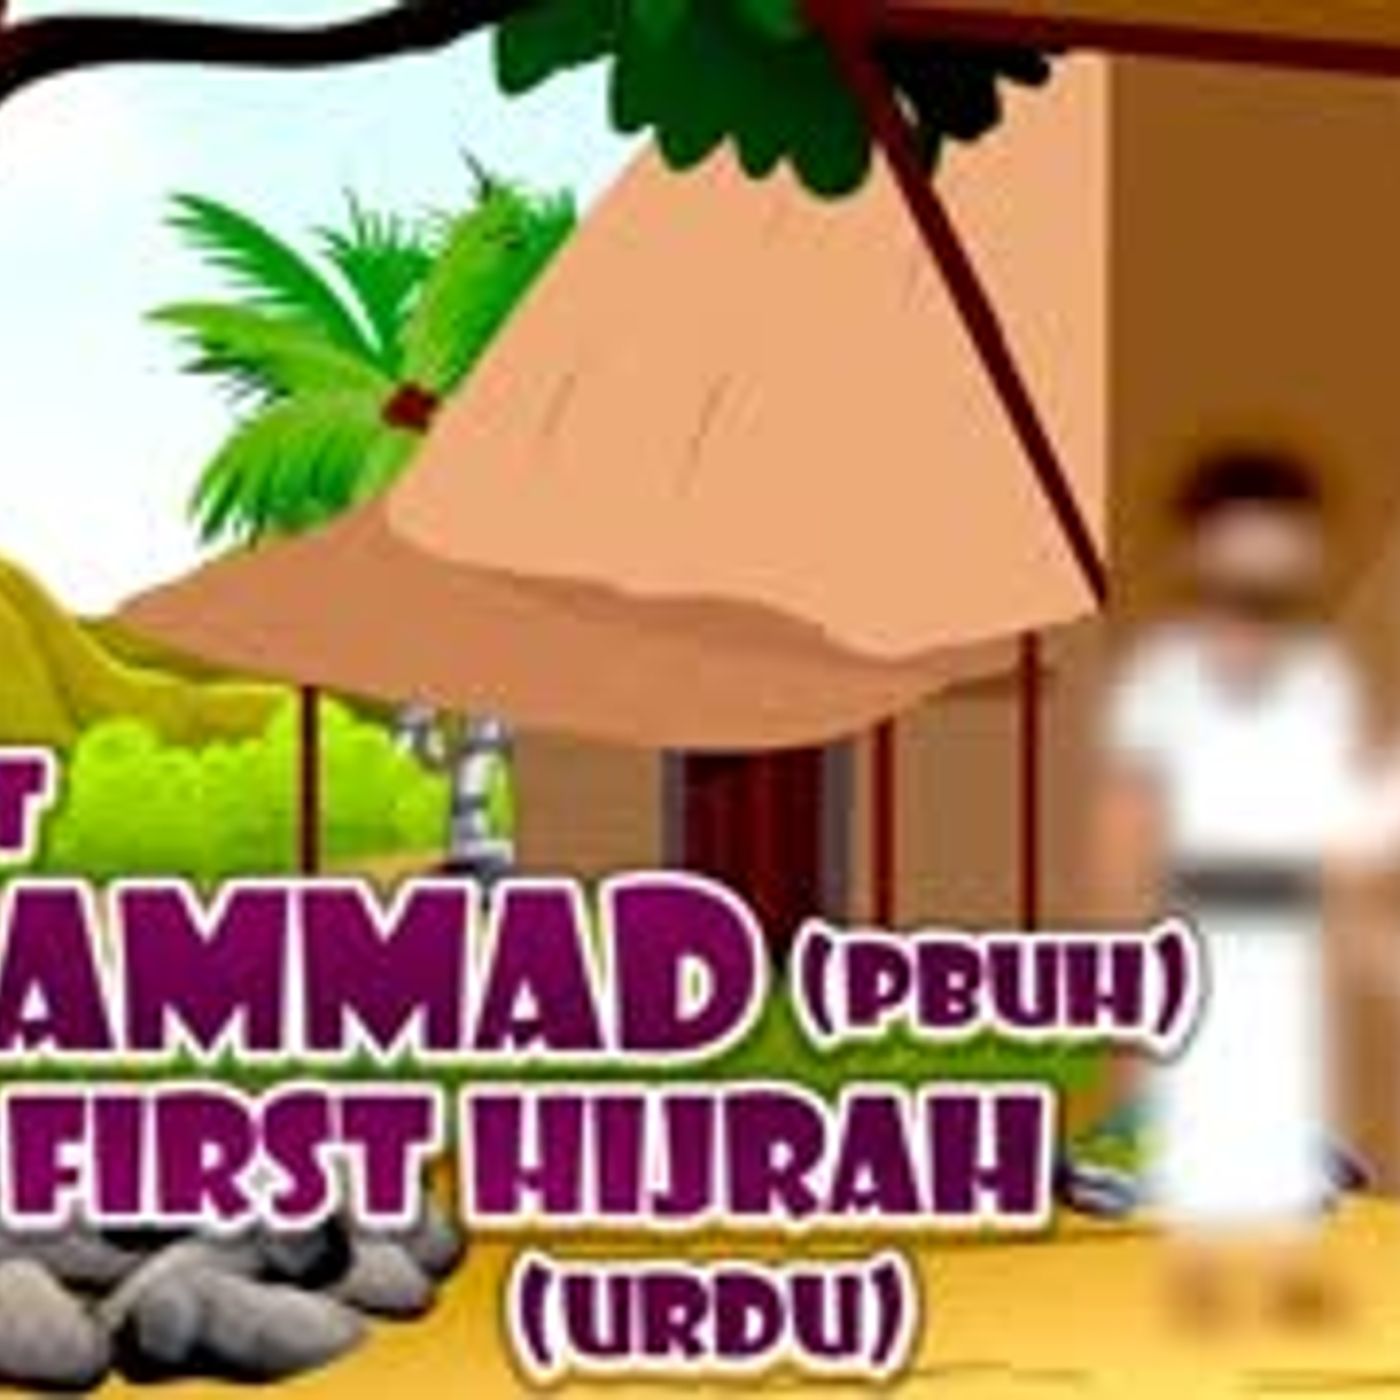 Prophet Stories In Urdu   Prophet Muhammad (SAW)   Part 3